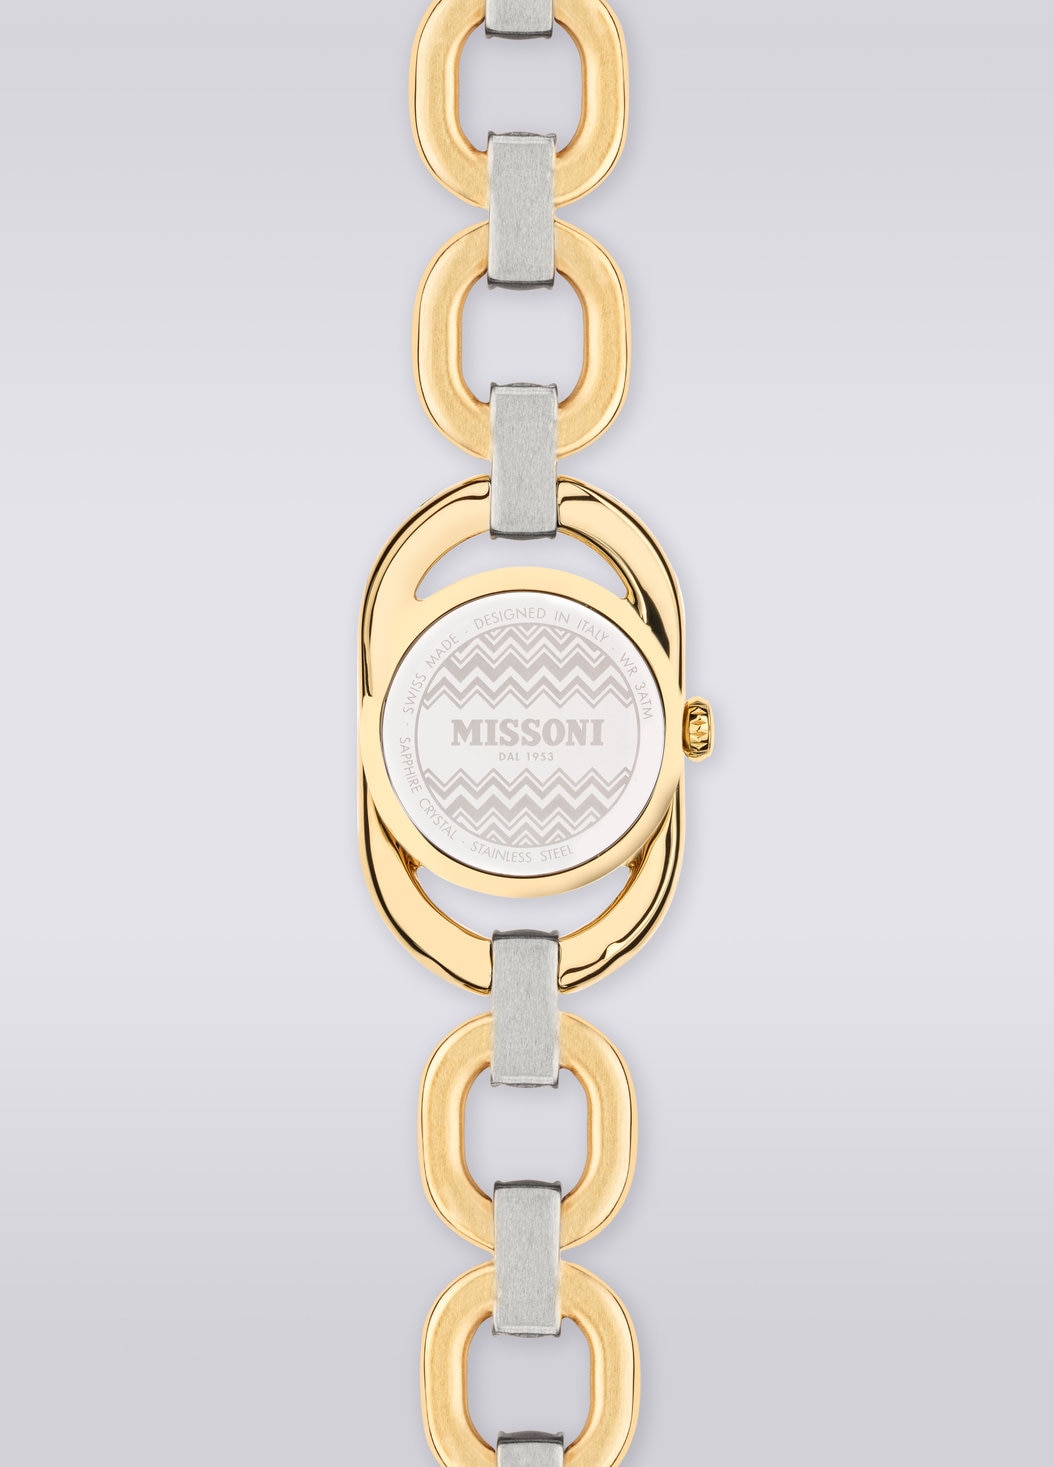 Missoni Gioiello Chain, Uhr mit 22,8 MM Gehäusegröße, Mehrfarbig  - 8053147046198 - 2